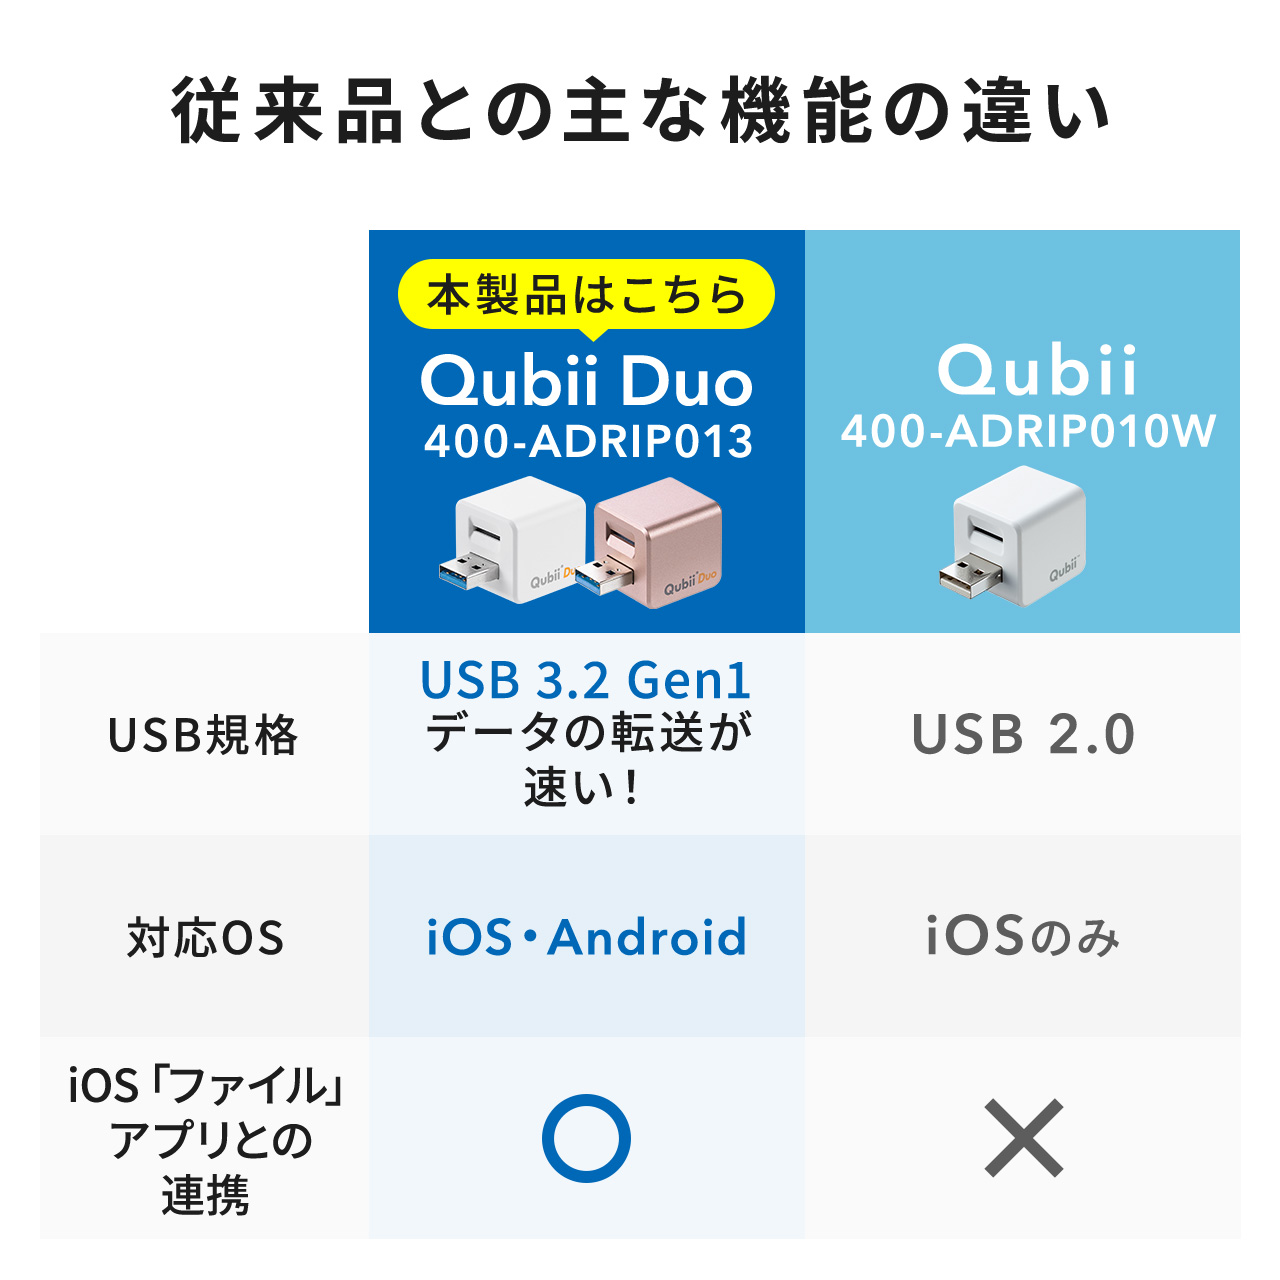 IPhone バックアップ 自動 Qubii Duo Android カードリーダー MicroSD IPad IOS スマホ 充電 簡単接続  USB3.2 Gen1 動画 写真 データ保存 外付けハードディスク、ドライブ